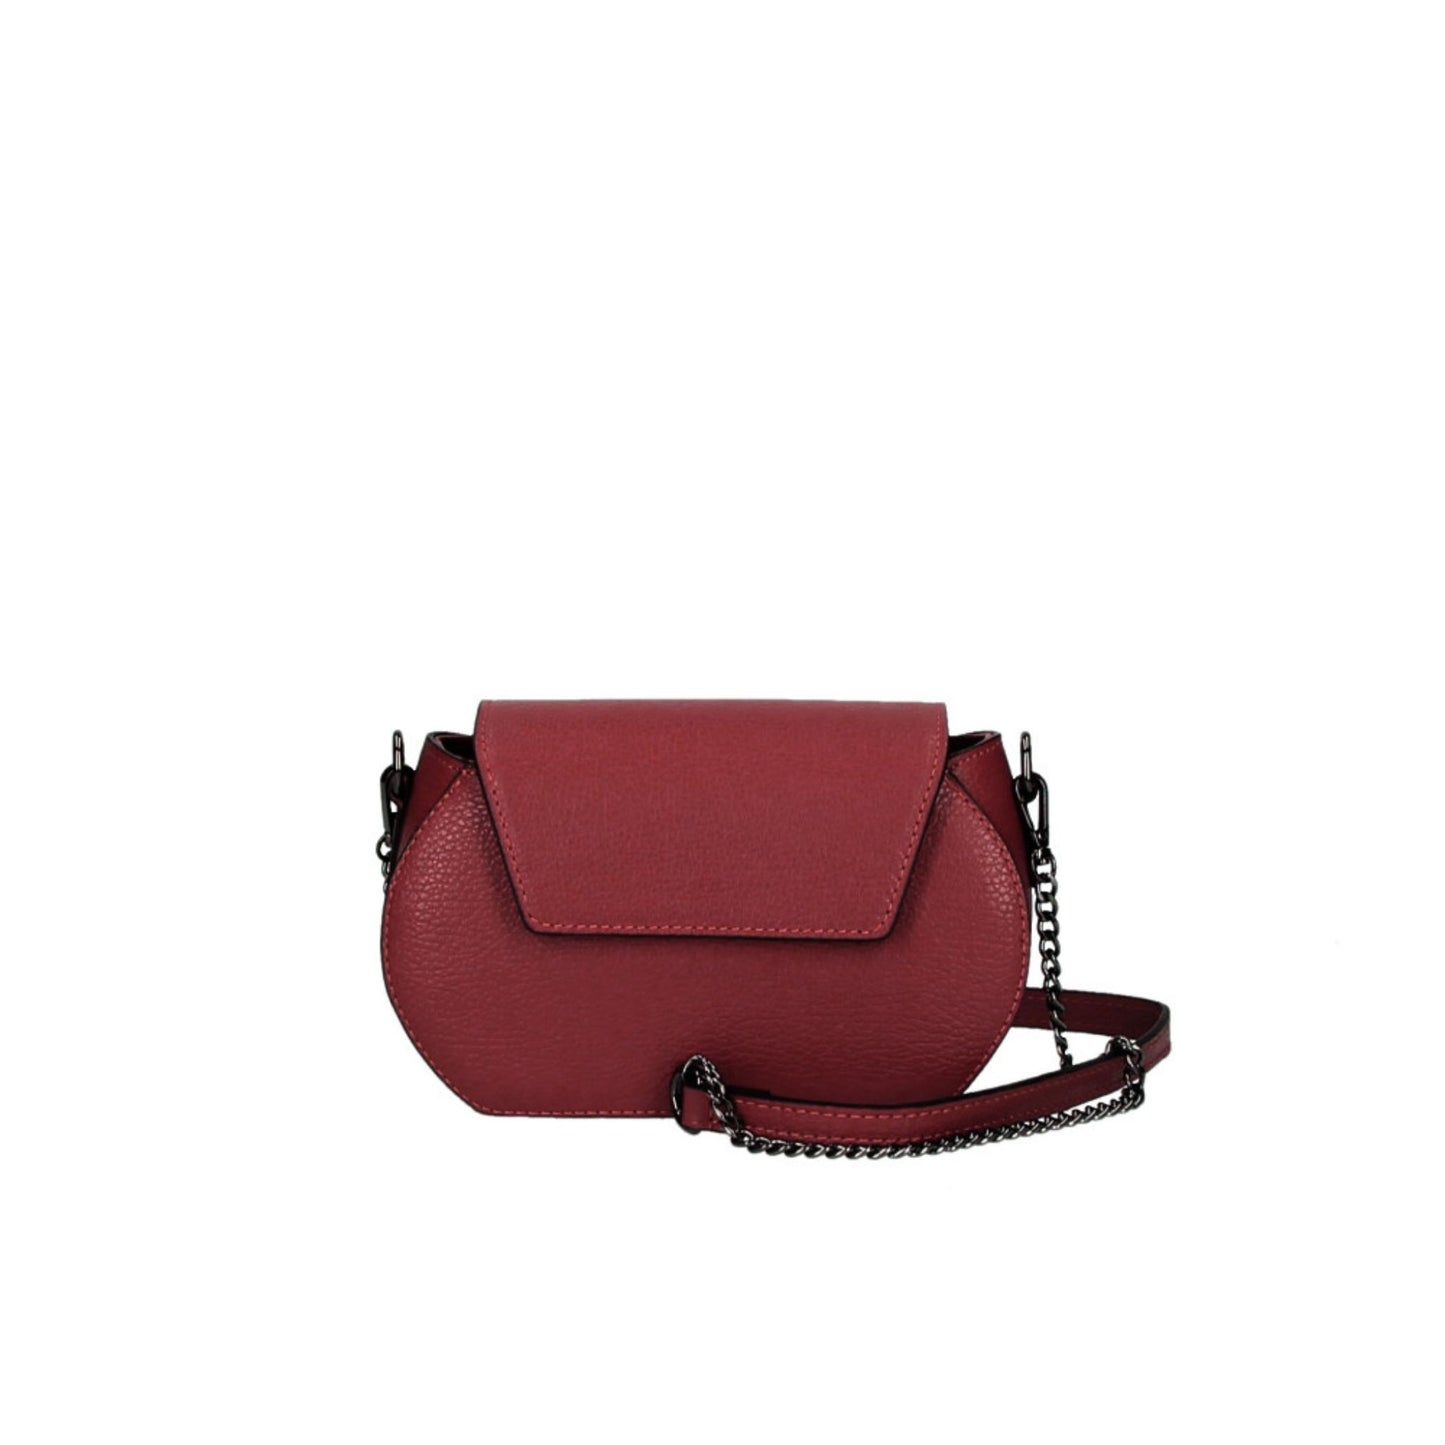 The Small Leather Handbag